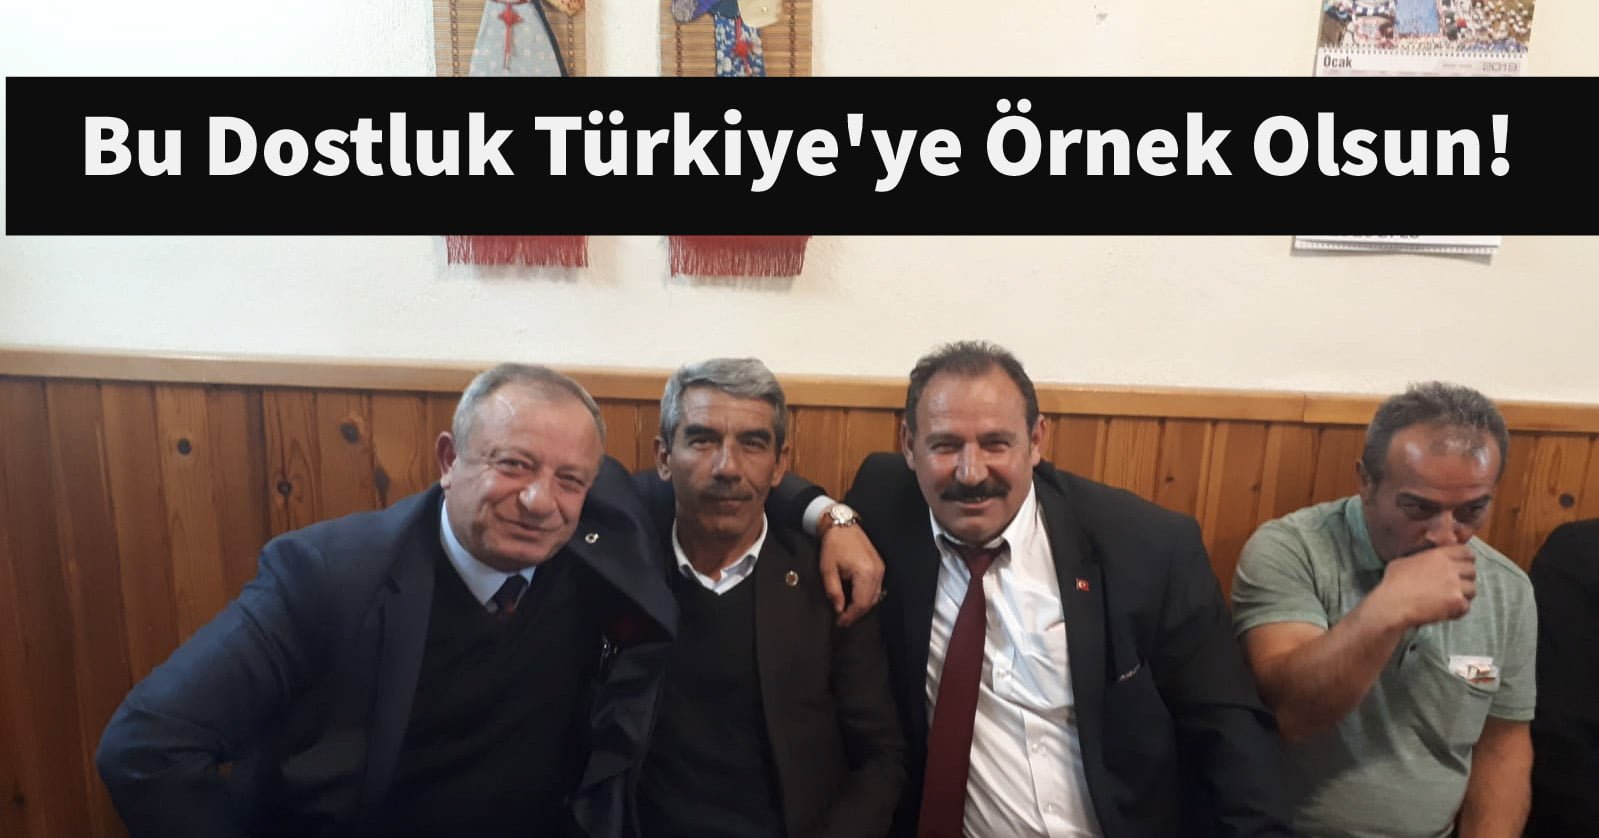 Bu Dostluk Türkiye’ye Örnek Olsun!